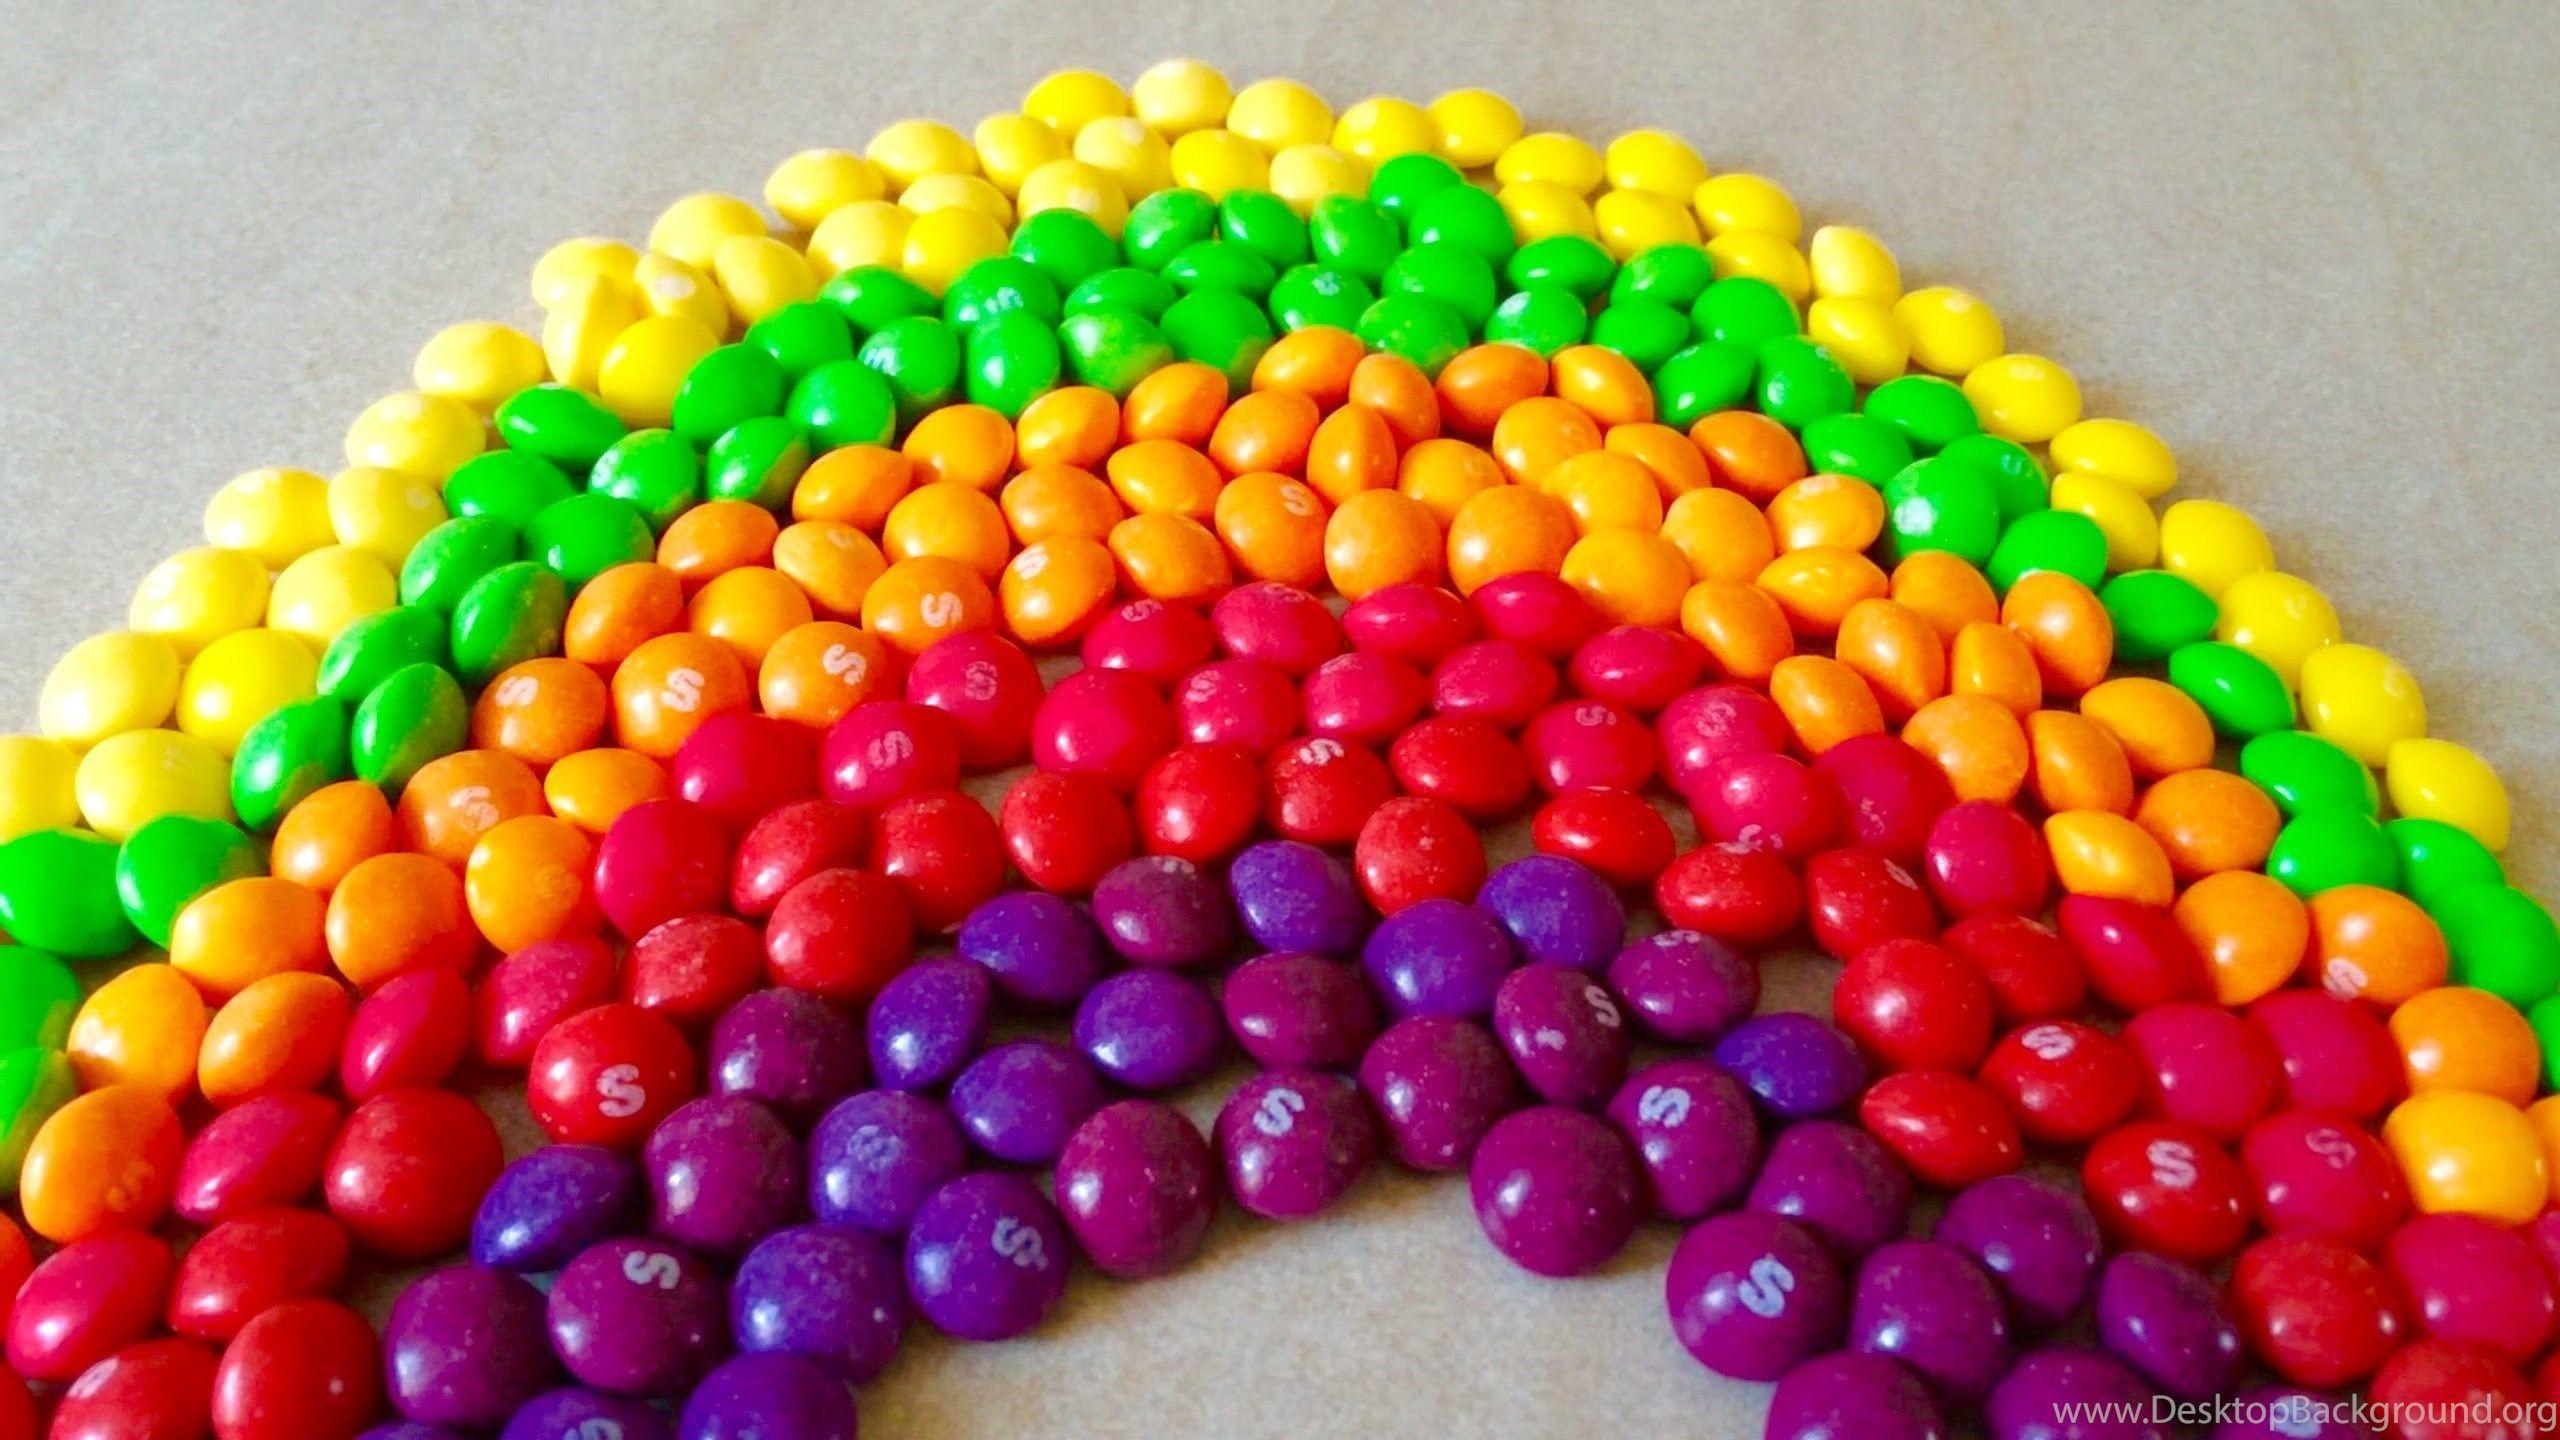 Skittles Rainbow Background